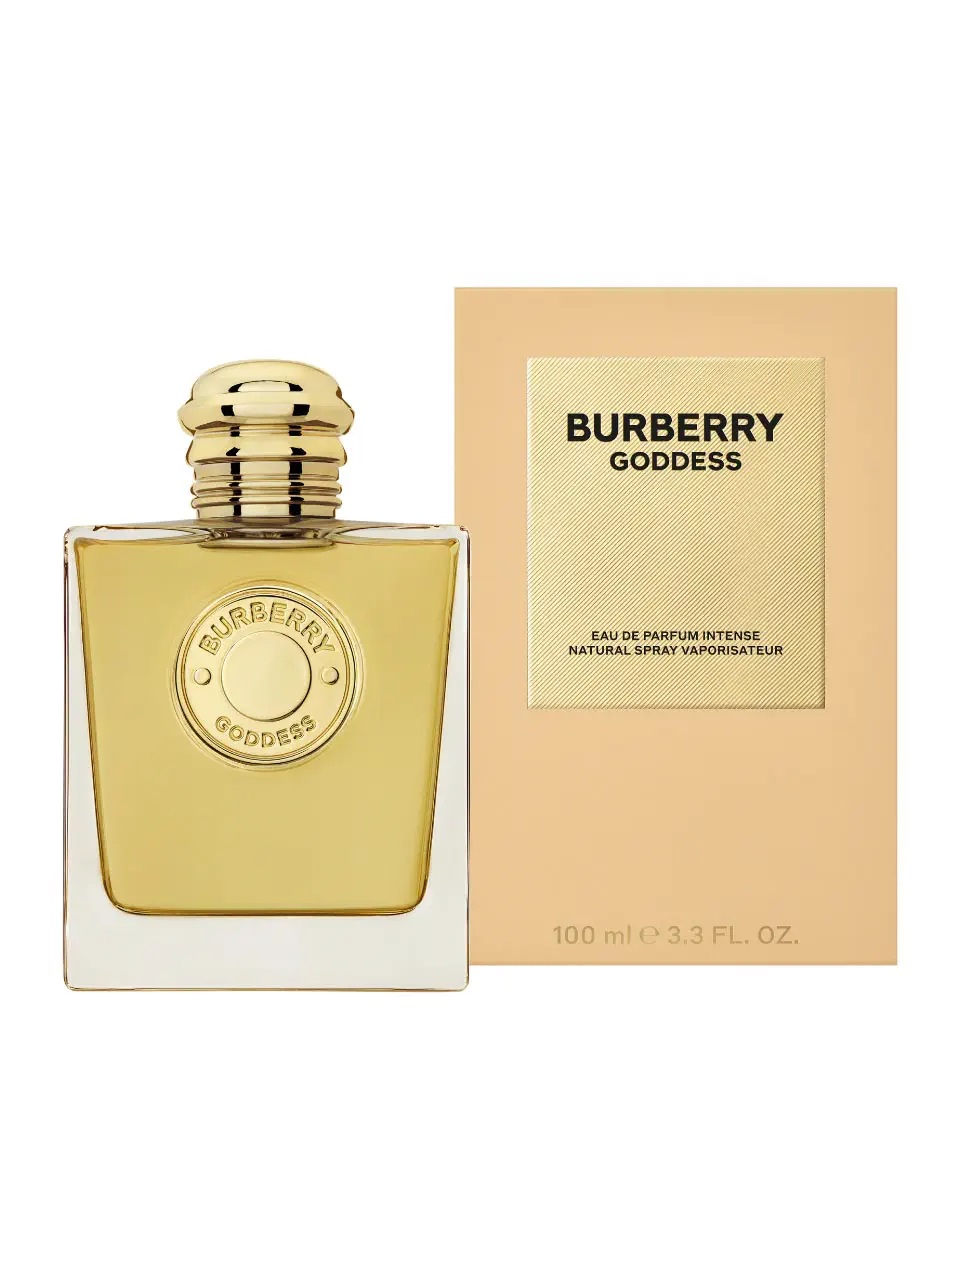 Burberry Goddess Eau de Parfum Intense 100 ml